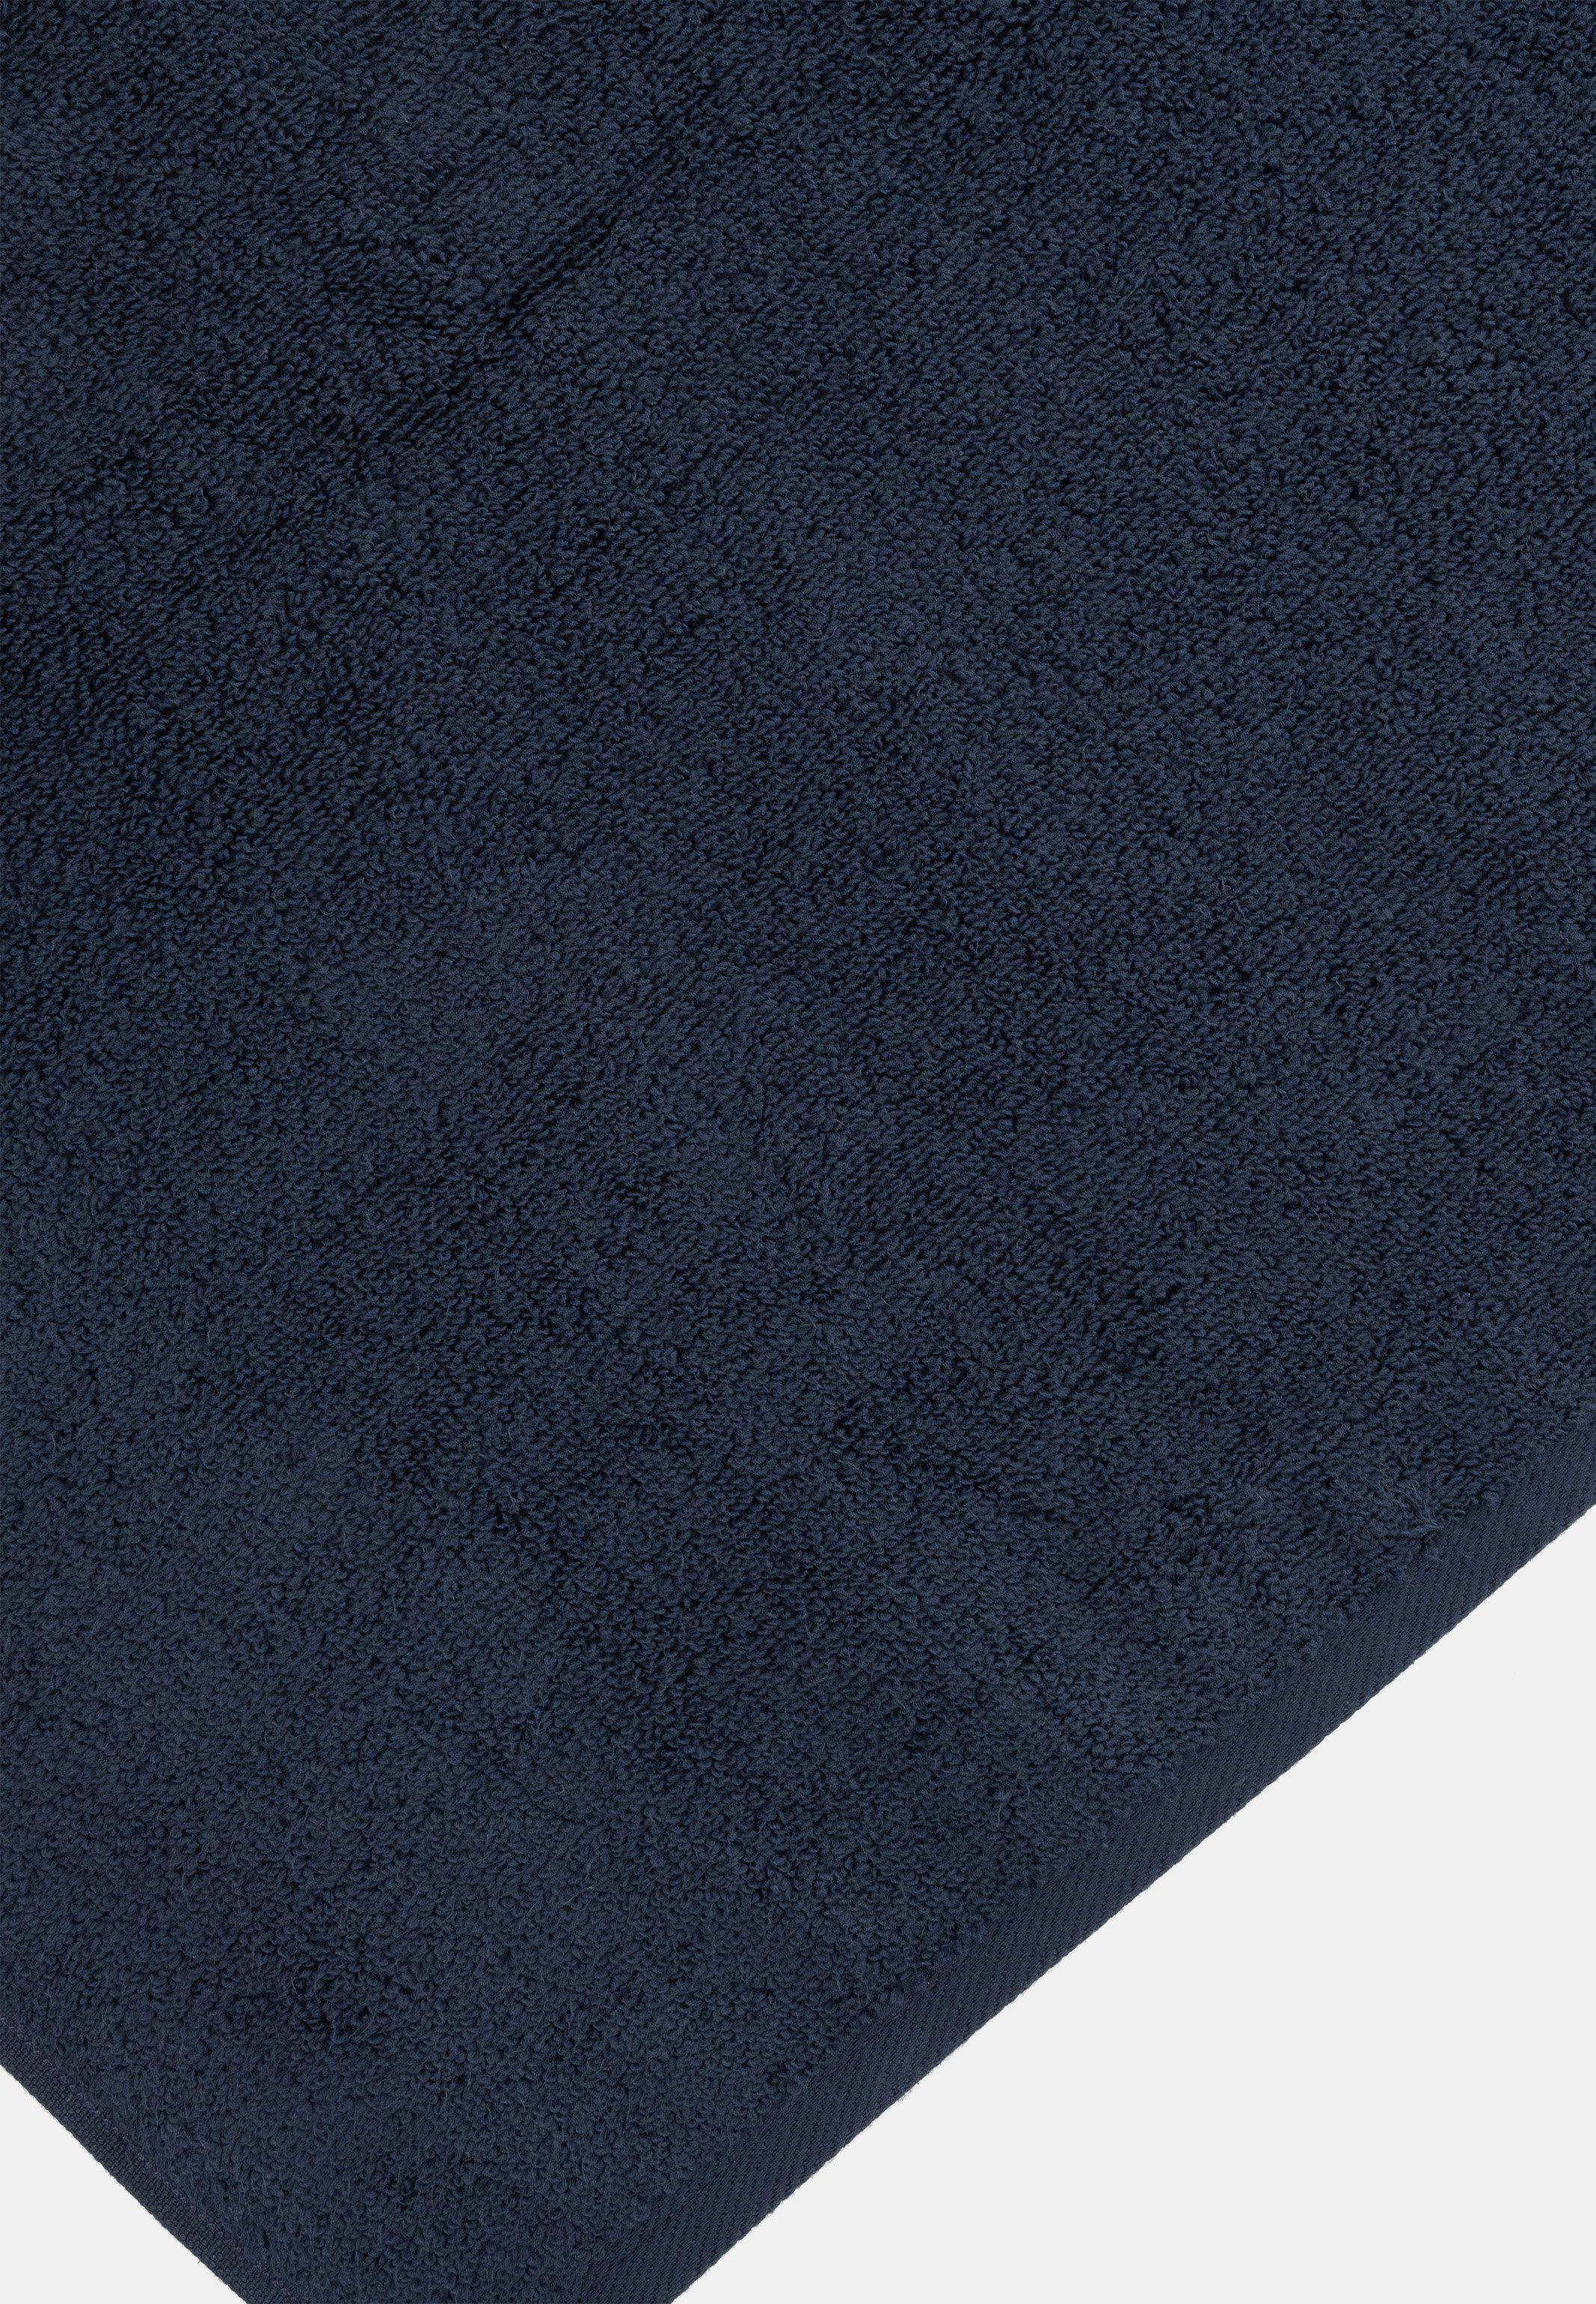 ROSS Handtuch Set - Walkfrottee, Set - Skin, im Duschtuch 2 - X (Spar-Set, Nachtblau 4-tlg), 2 Sensual Baumwolle Handtuch X